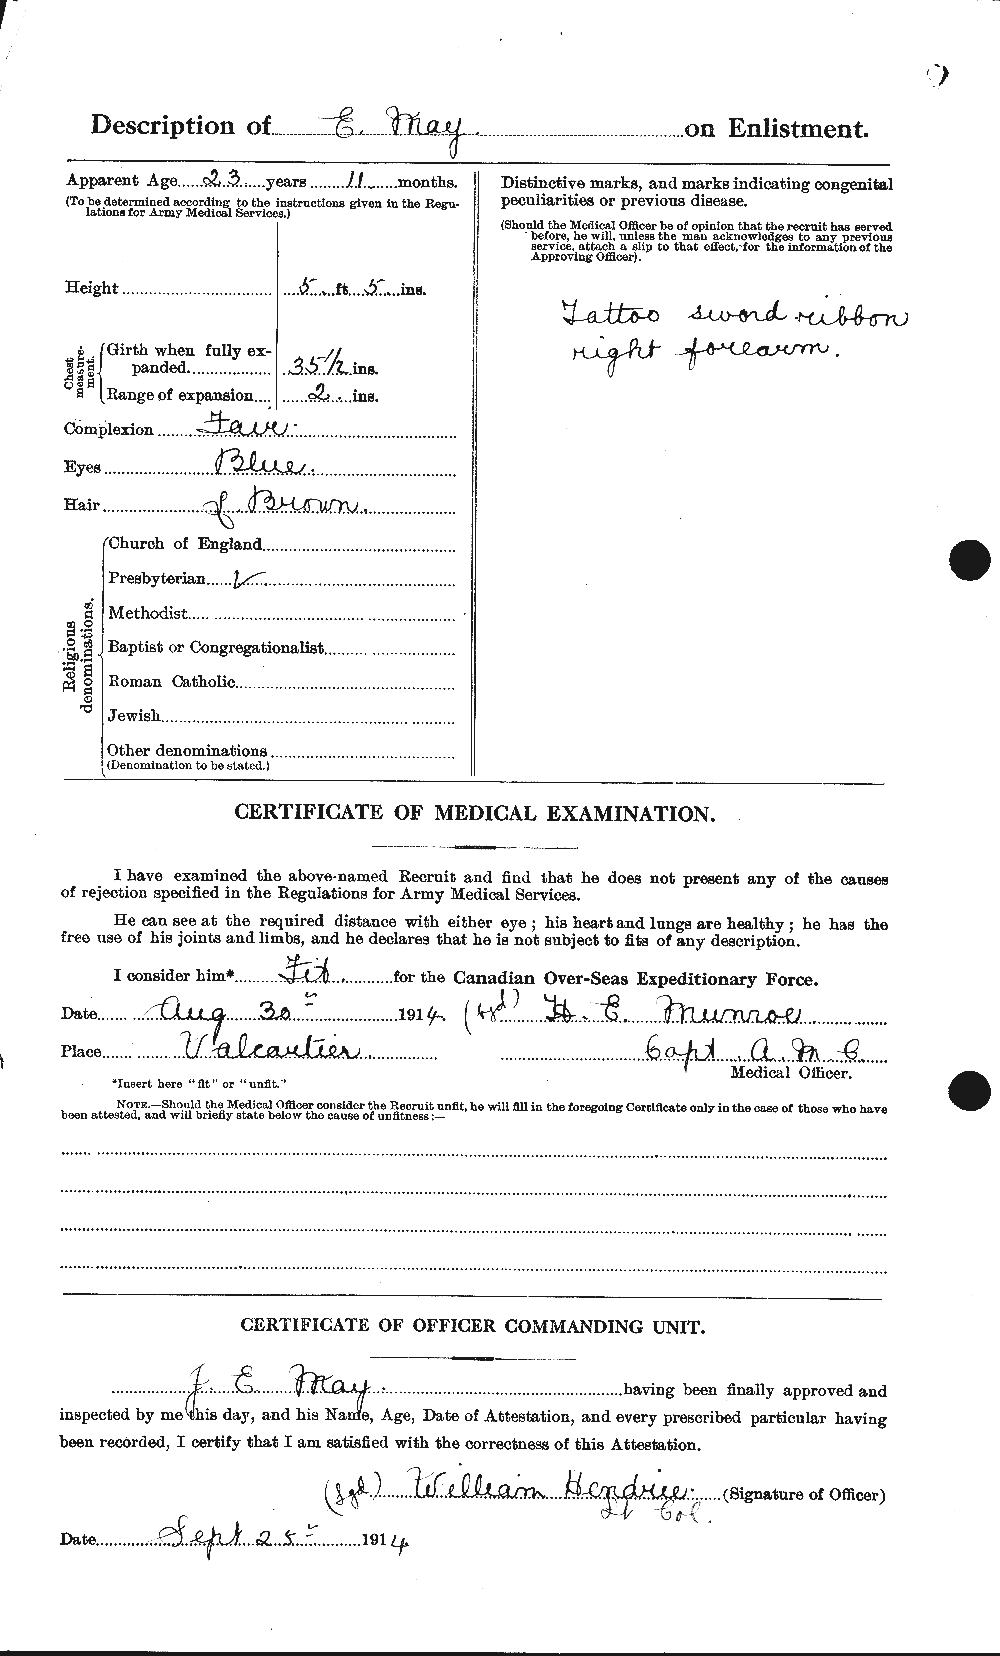 Dossiers du Personnel de la Première Guerre mondiale - CEC 492211b